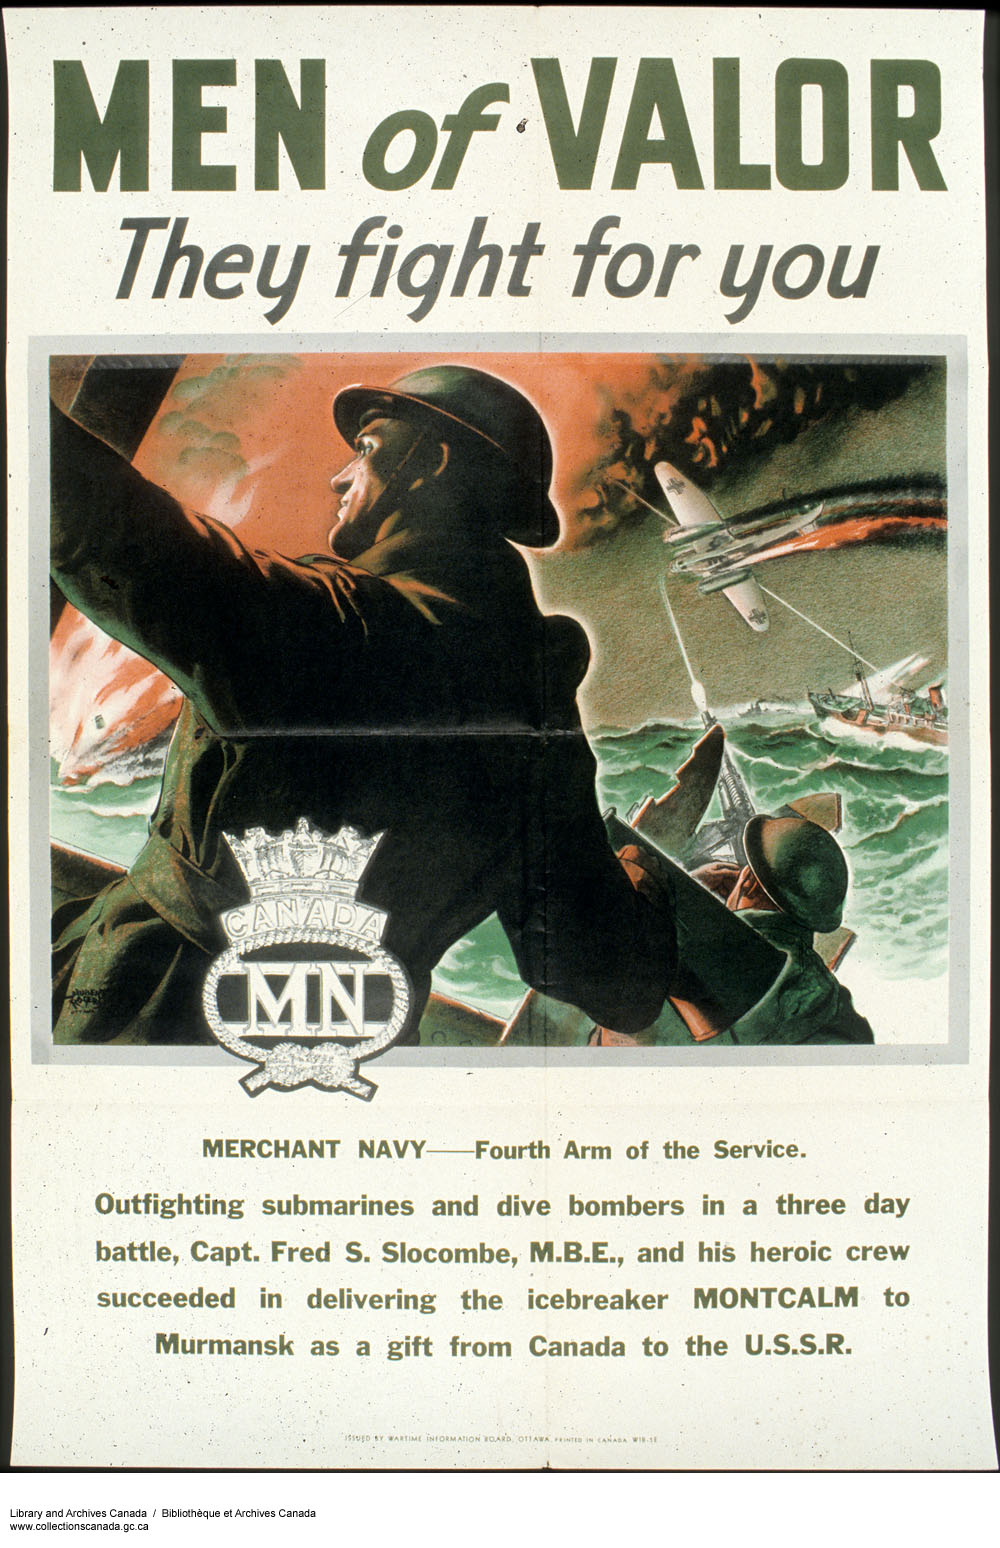 Отважные люди - они сражаются за тебя! Плакат рассказывает о подвиге экипажа канадского ледокола для которого путь в Мурманск с подарками для СССР от Канады оказался битвой, продолжавшейся три дня. Плакат призывает идти служить в торговый флот.